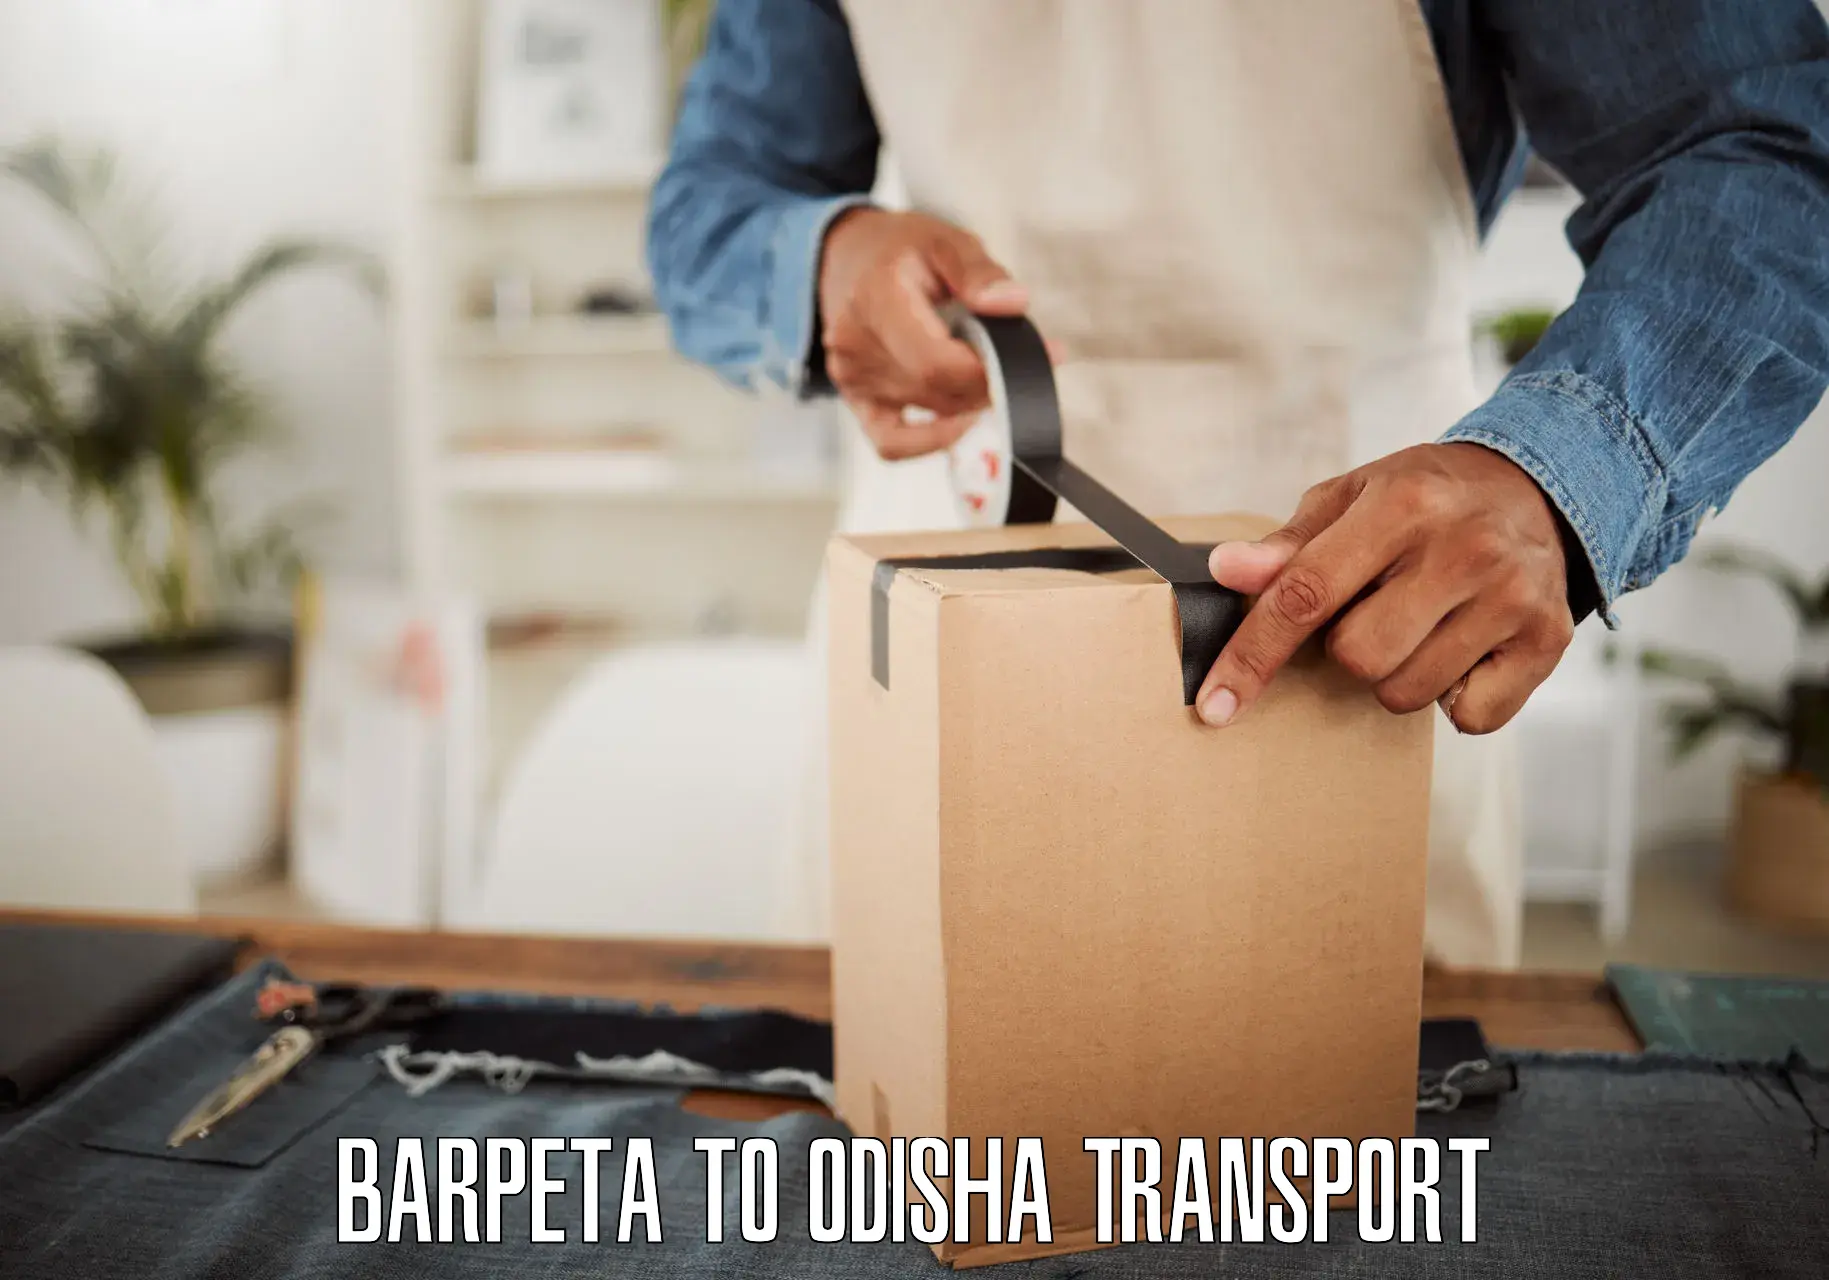 Container transport service Barpeta to Galleri